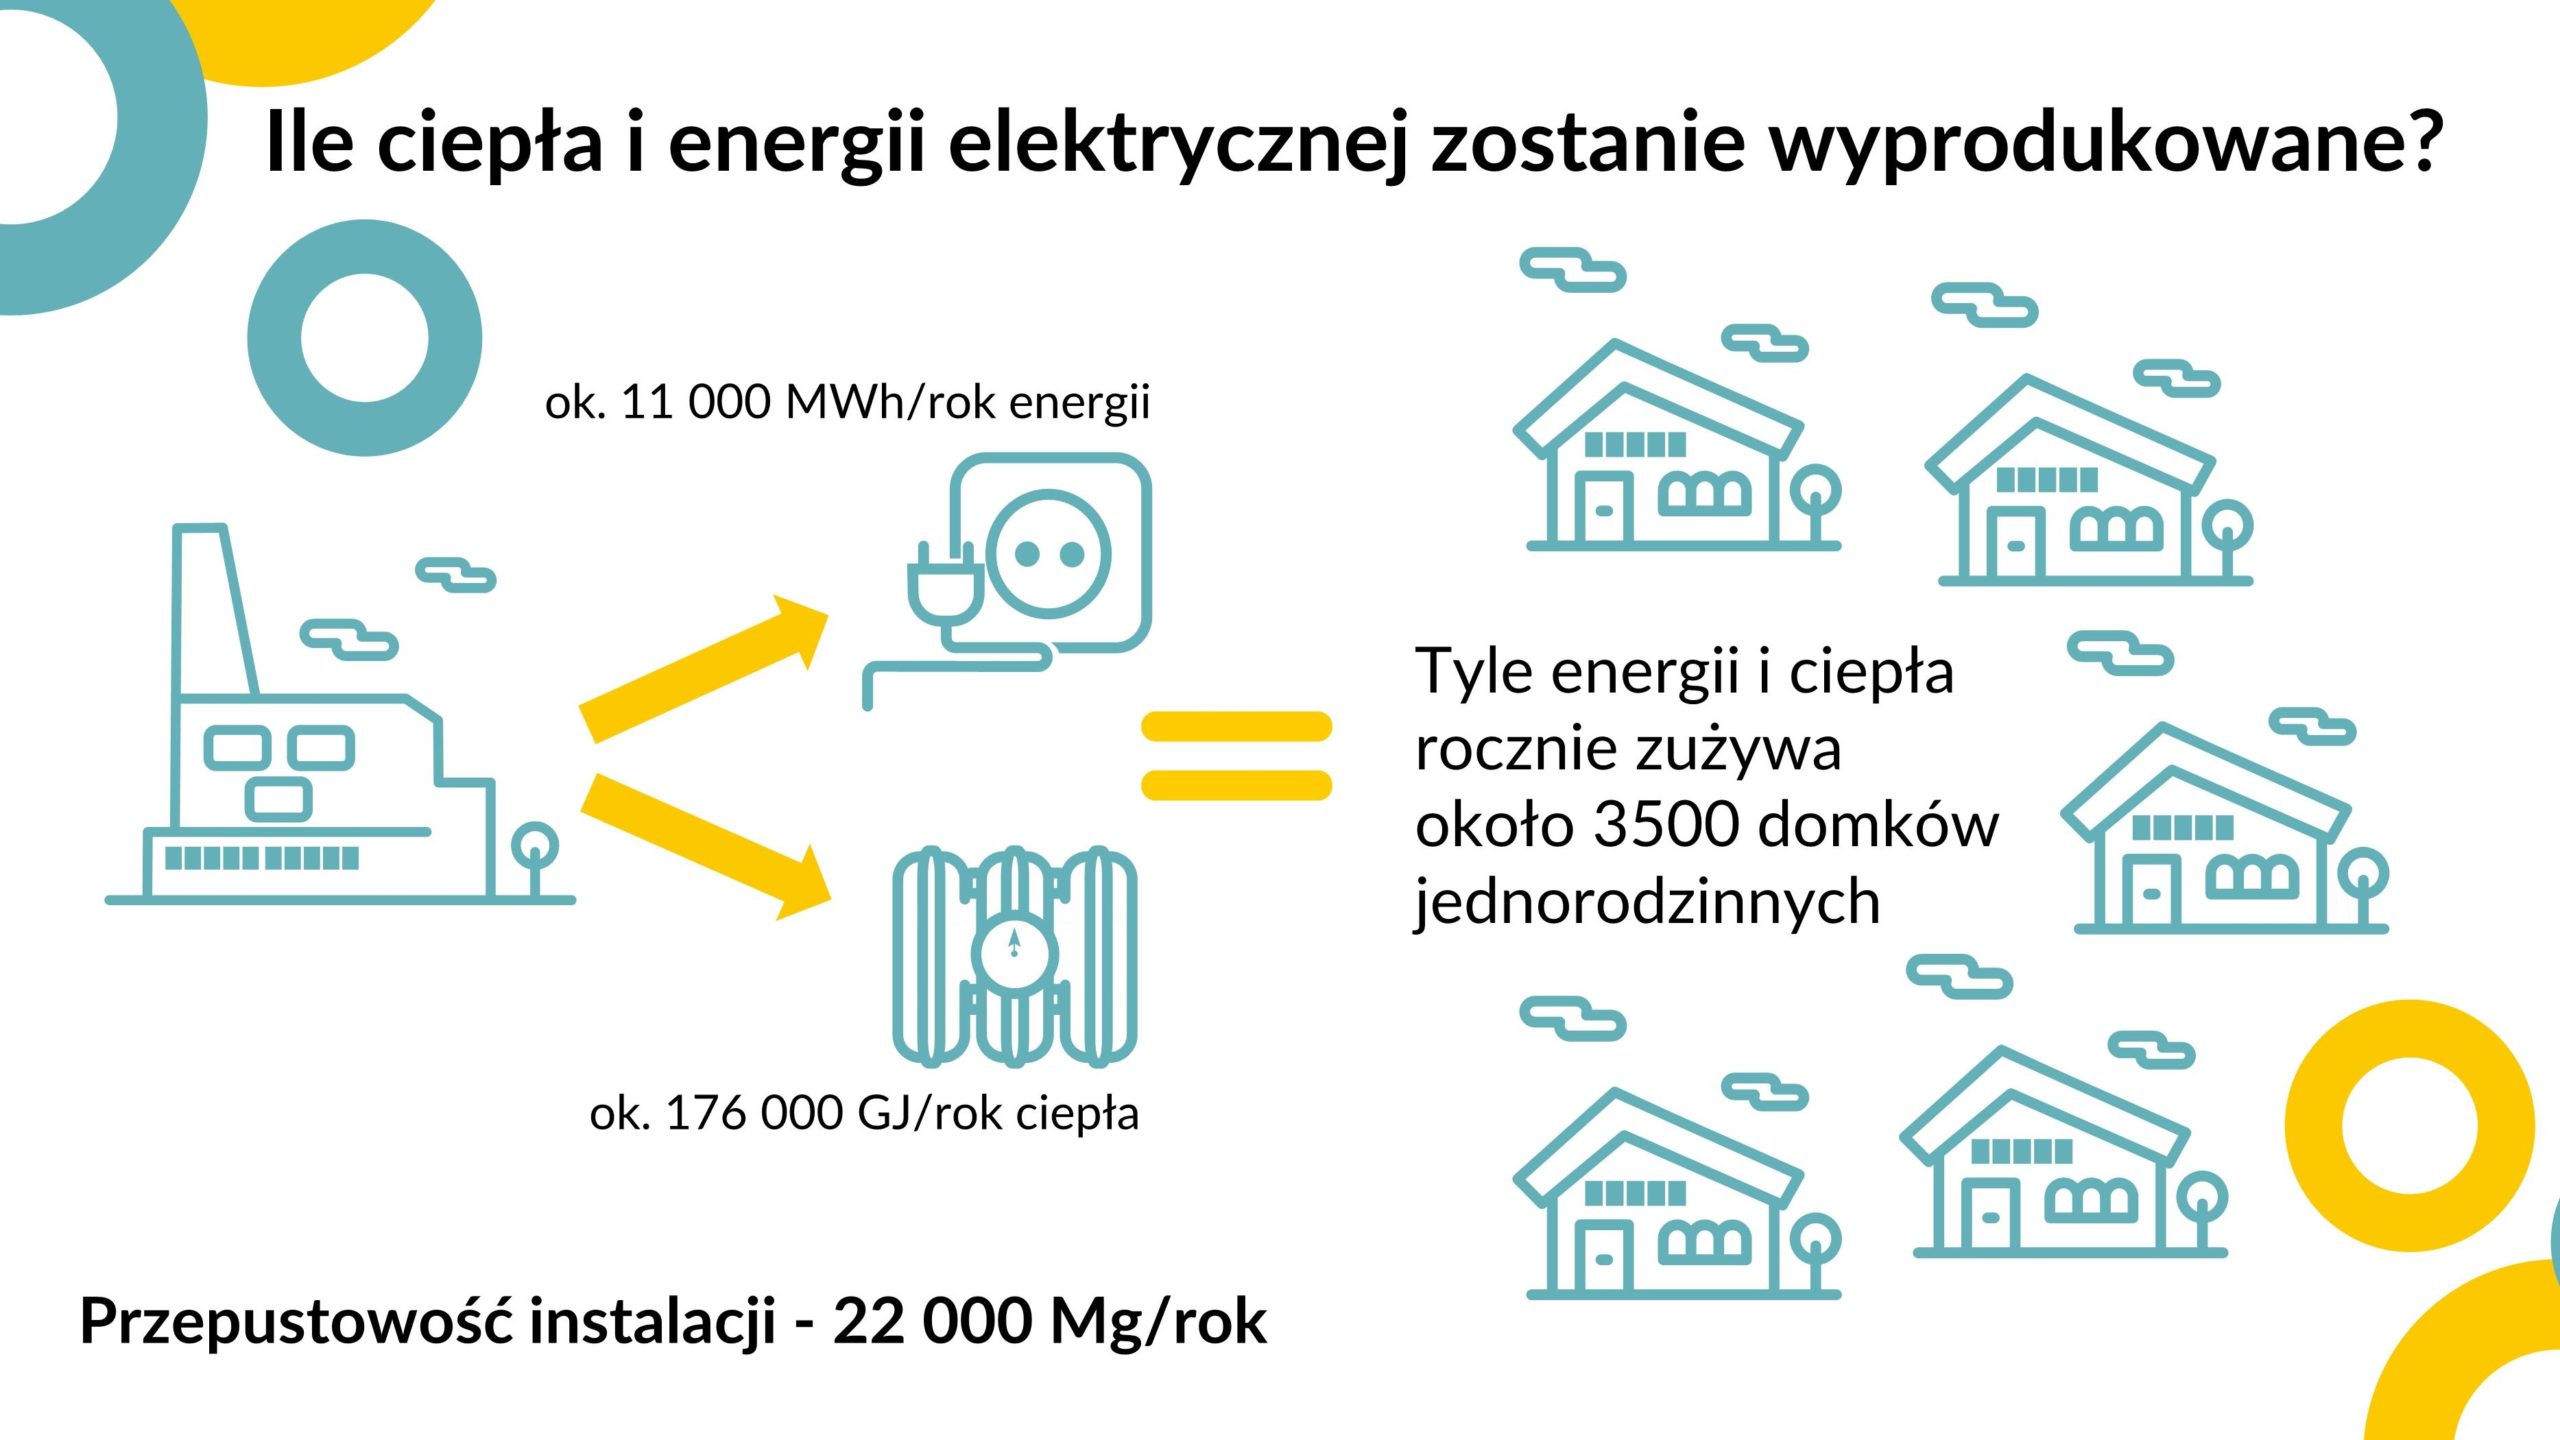 Koniec prac nad koncepcją budowy elektrociepłowni na paliwa alternatywne dla Ostrowa Wielkopolskiego